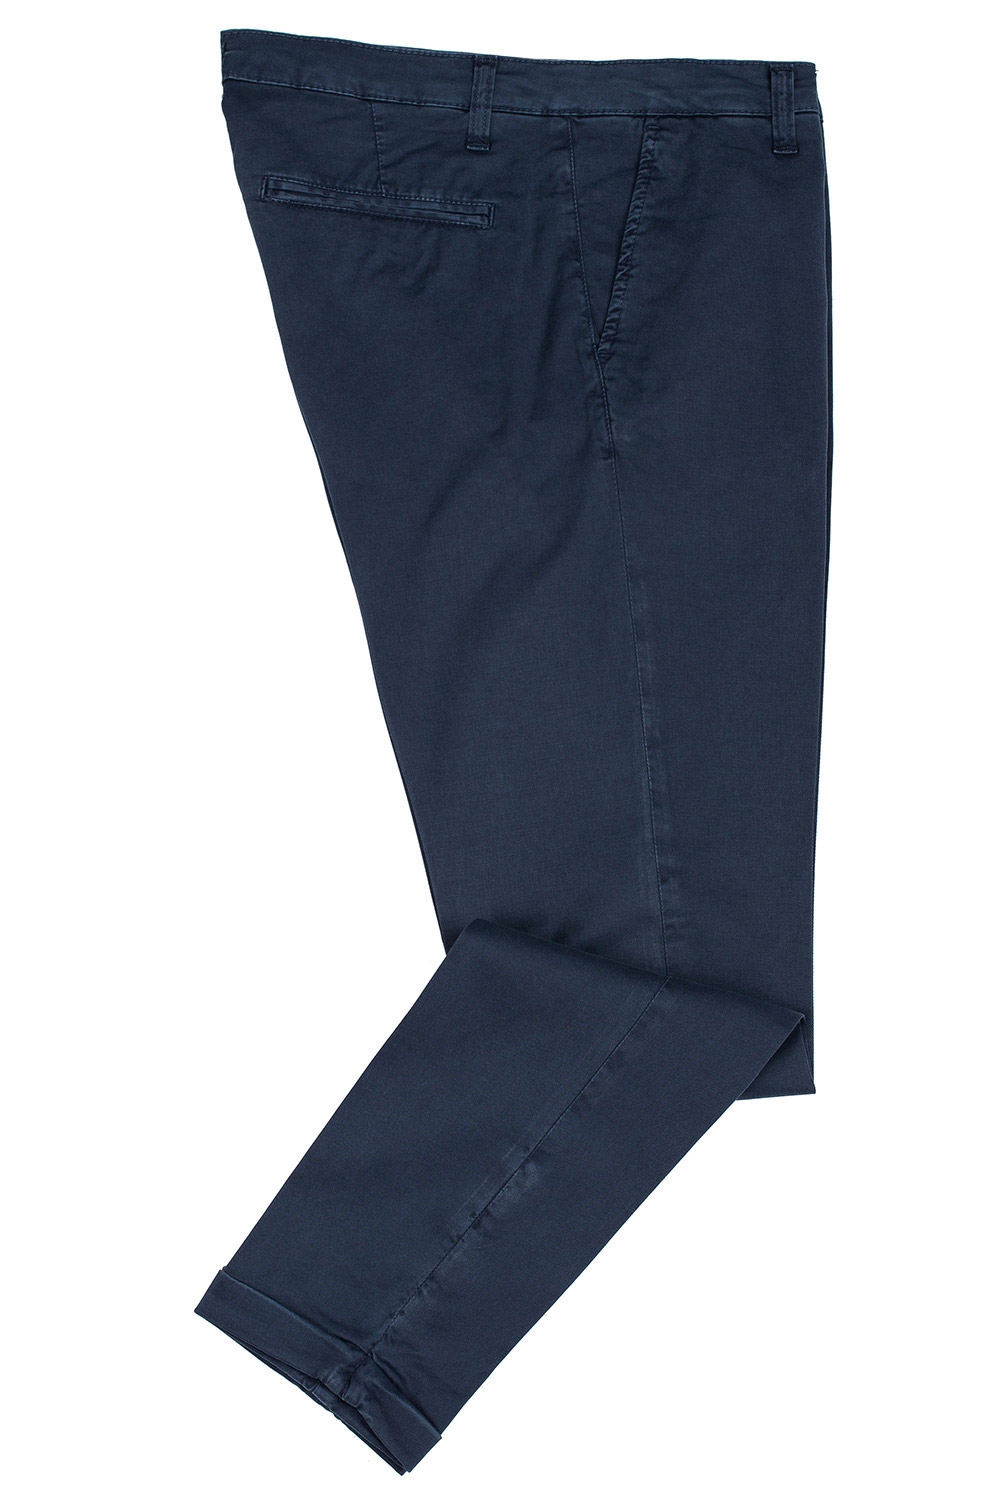 Pantaloni slim bleumarin uni 1